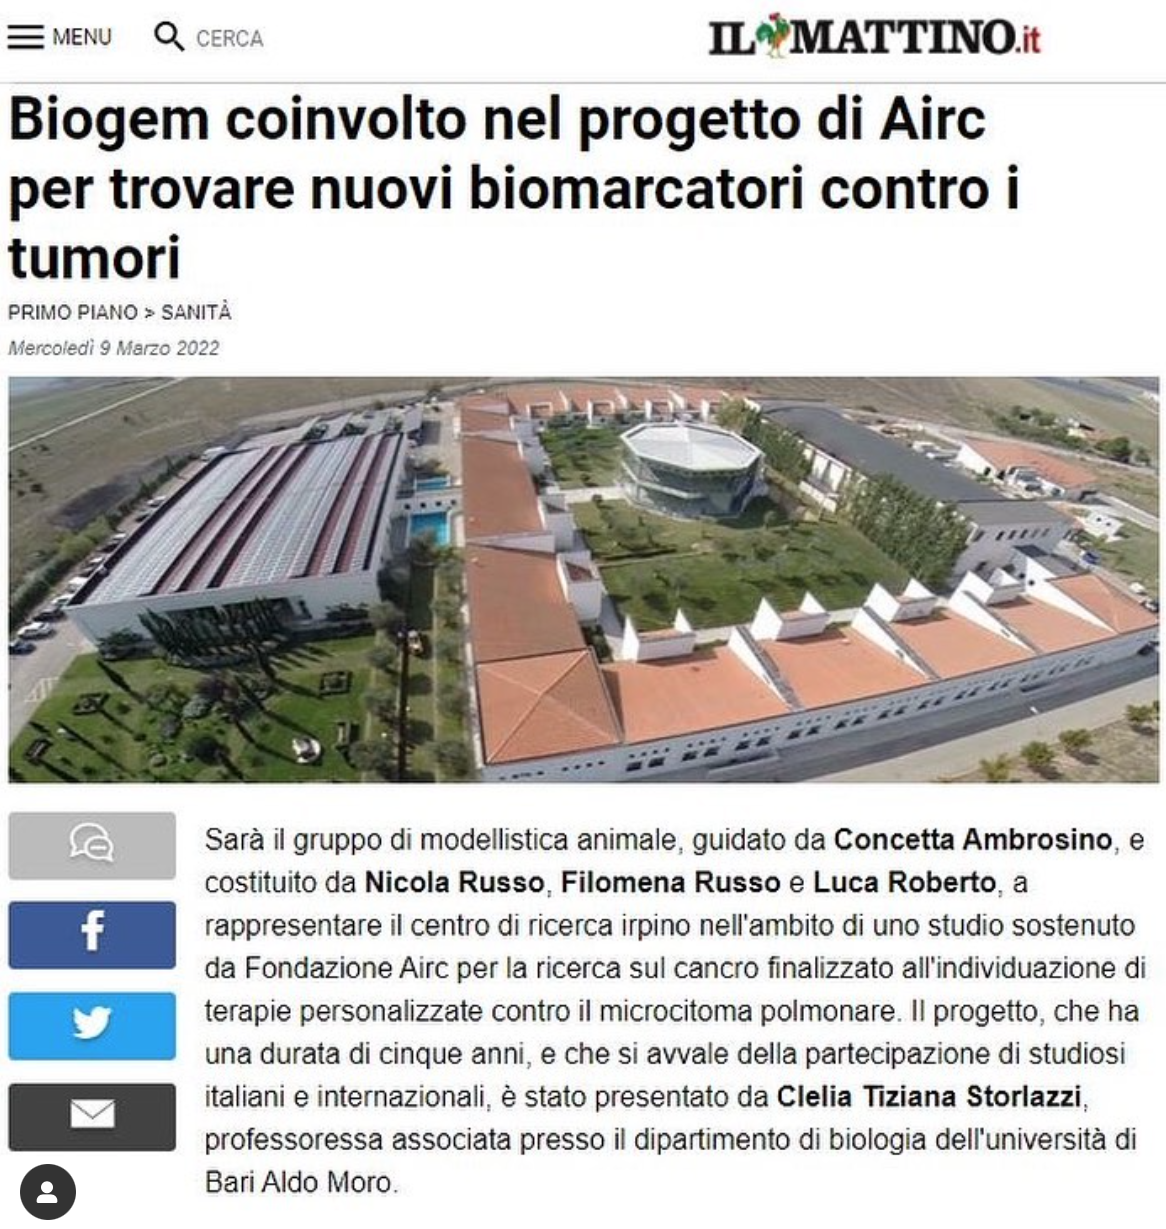 Biogem coinvolto nel progetto di Airc per trovare nuovi biomarcatori contro i tumori